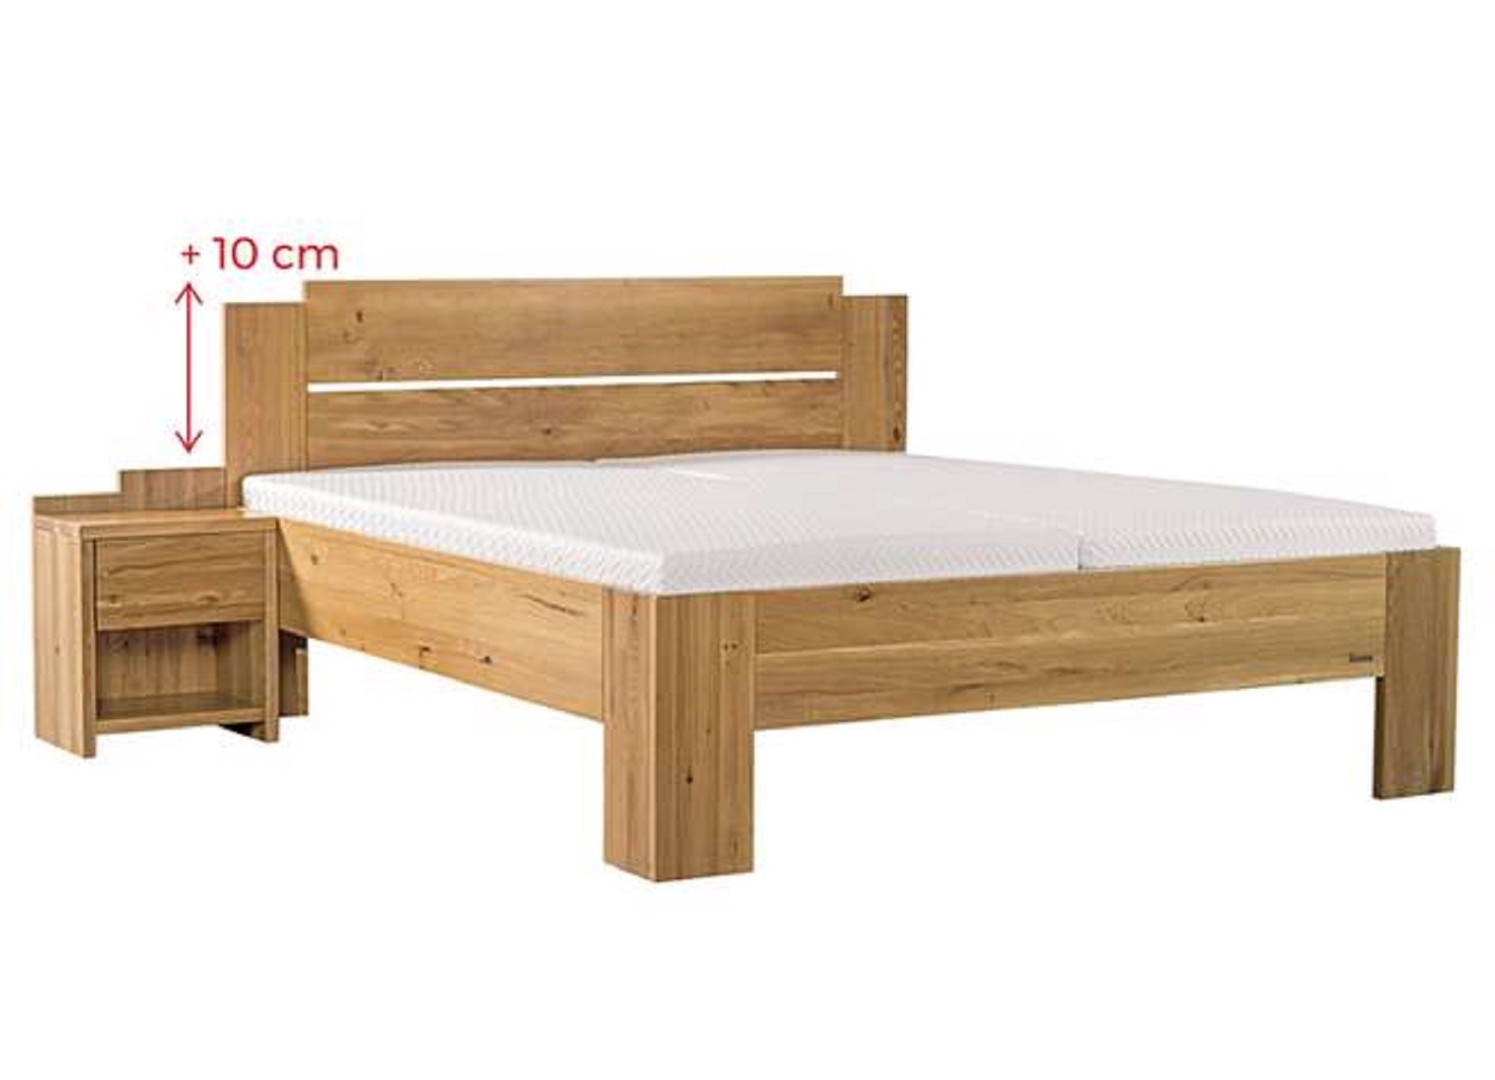 Ahorn GRADO MAX - masivní buková postel se zvýšeným čelem 180 x 200 cm, buk masiv